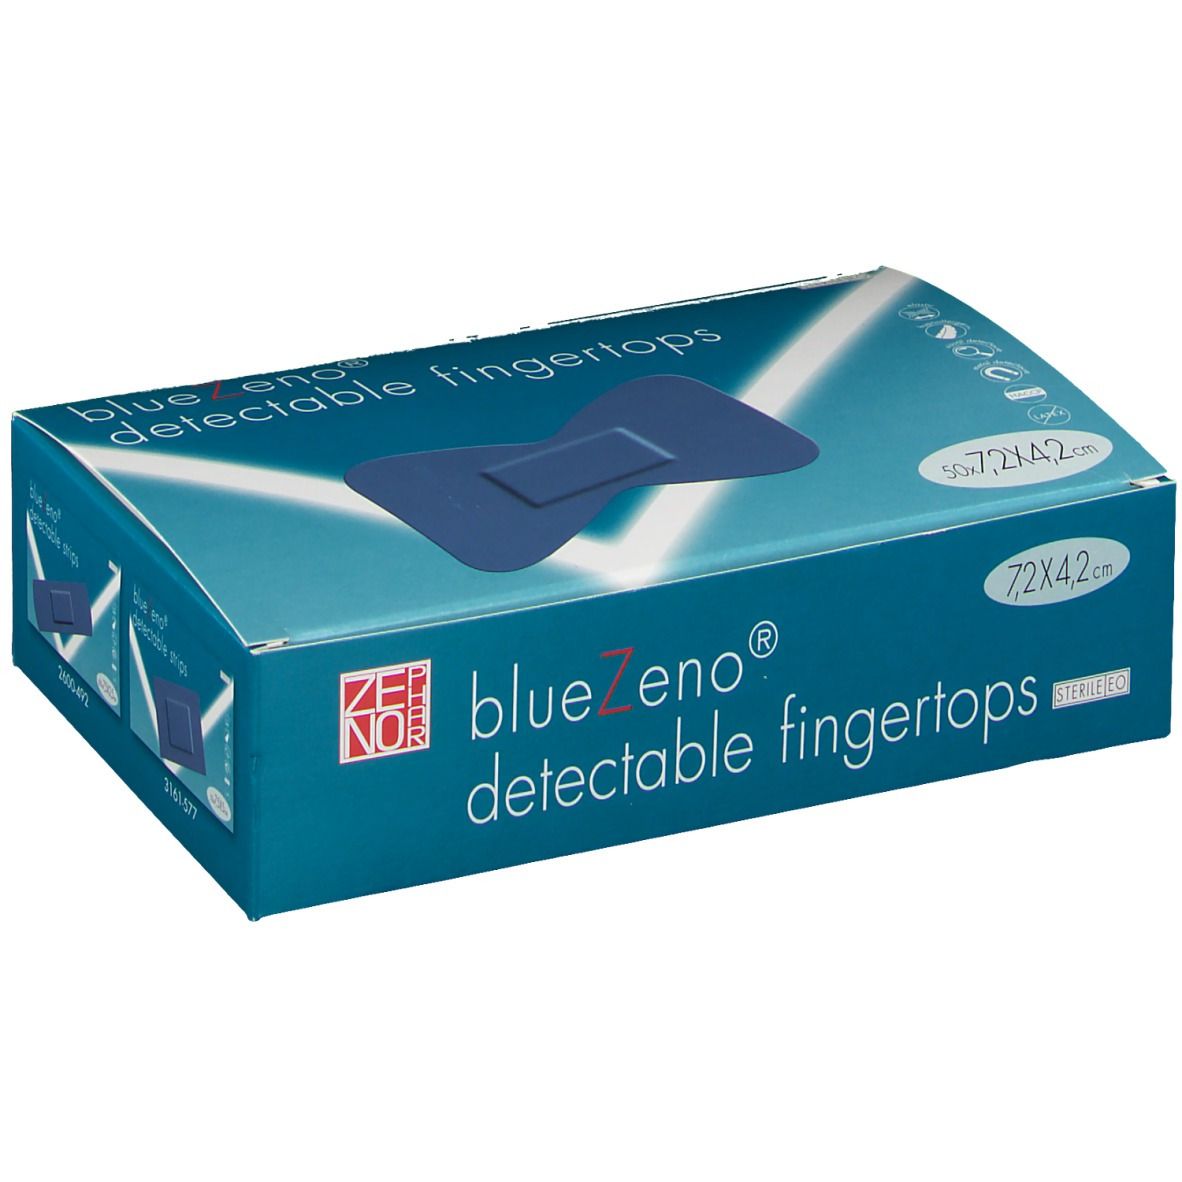 Bluezeno Detectable Fingertop Stérile 7,2cm x 4,2cm